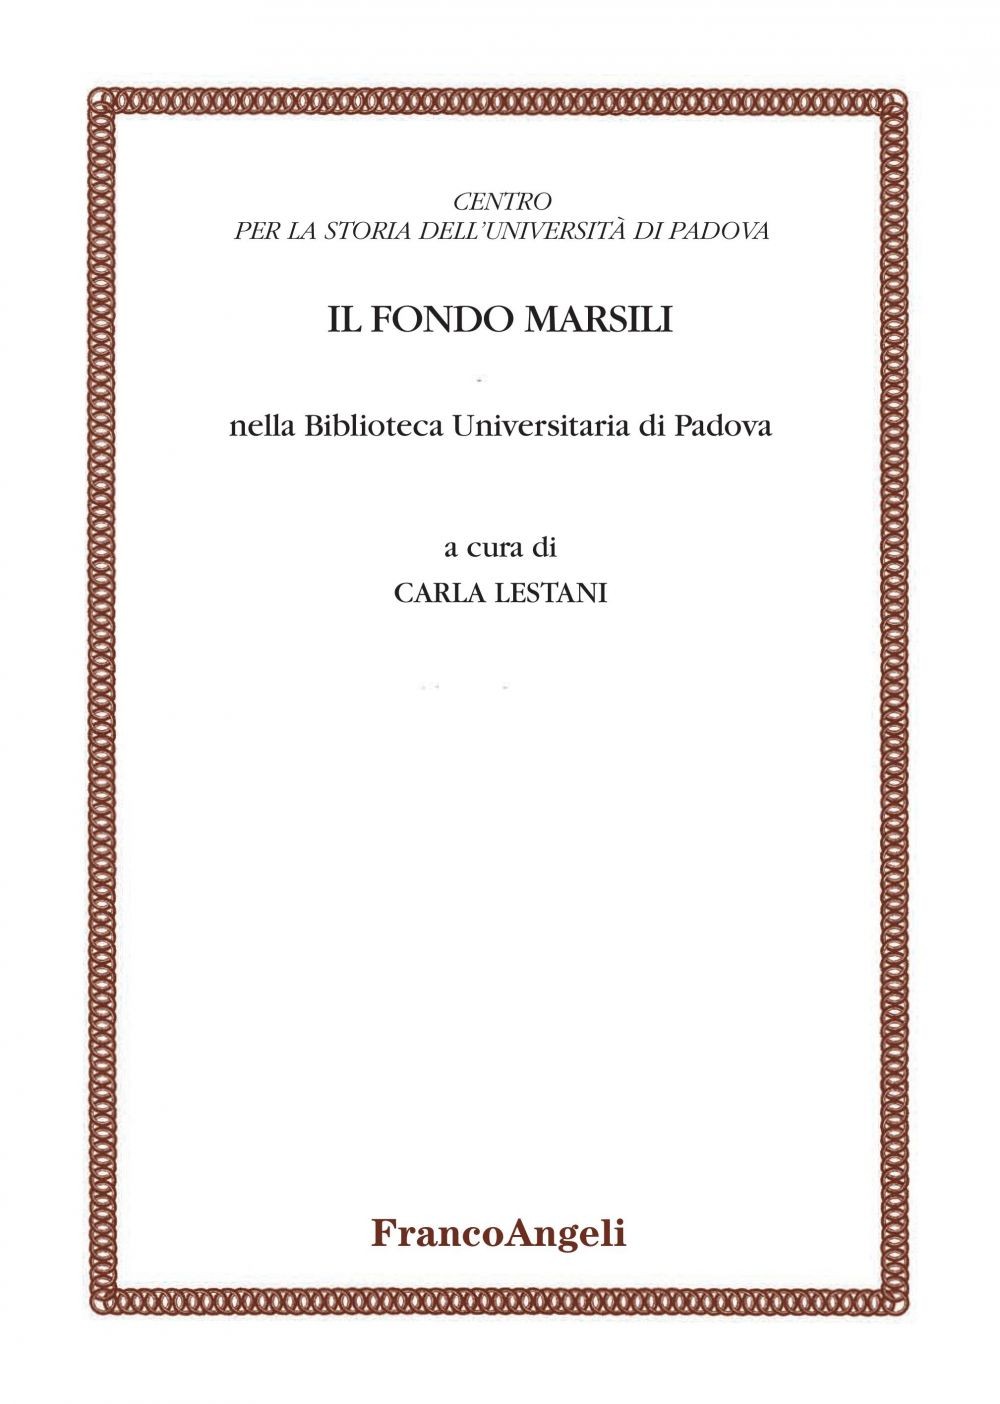 Il Fondo Marsili nella Biblioteca universitaria di Padova - Librerie.coop